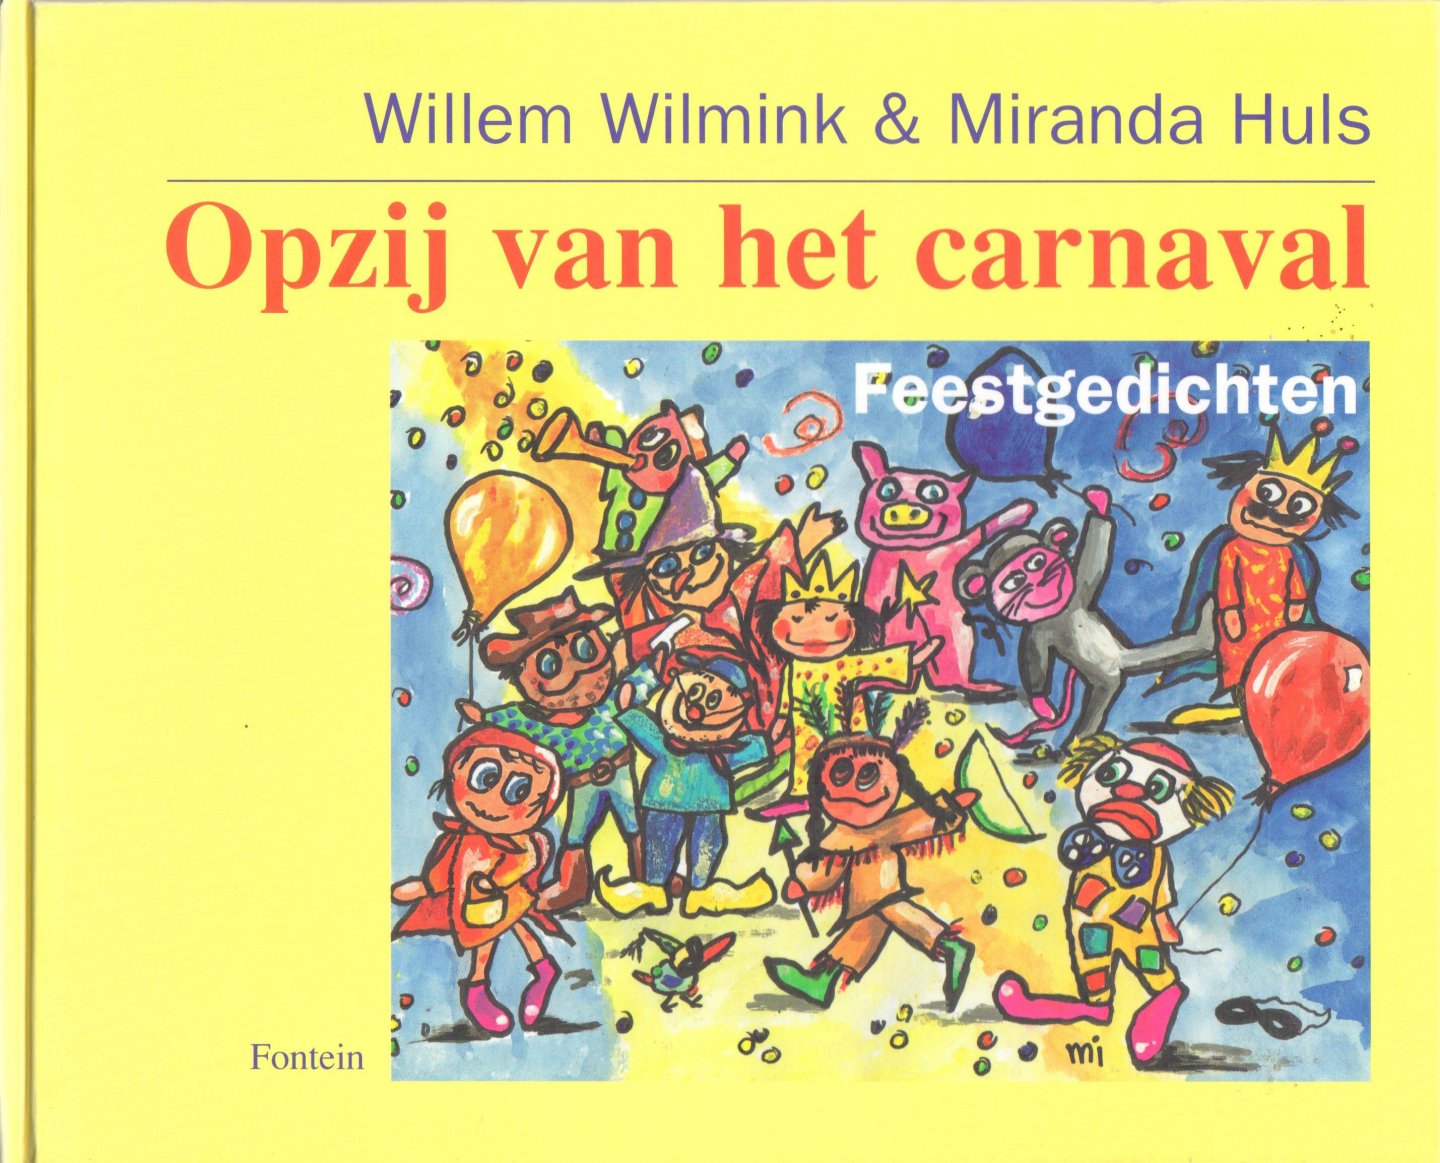 Wilmink, Willem en Huls, Miranda - Opzij van het carnaval, feestgedichten